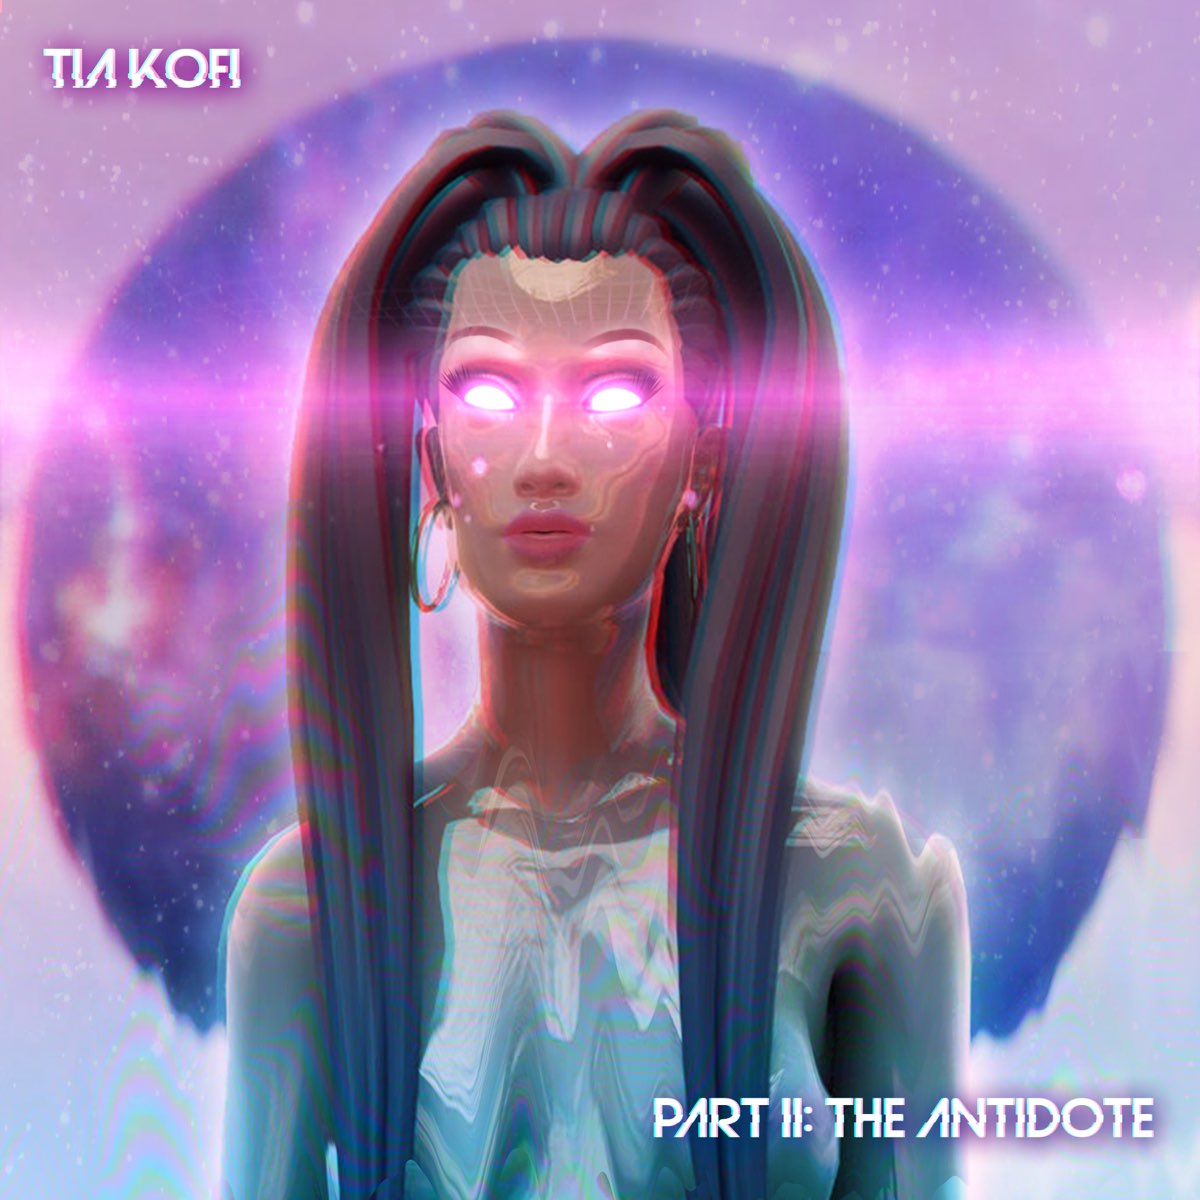 Tia Kofi Part 2: The Antidote - EP cover artwork